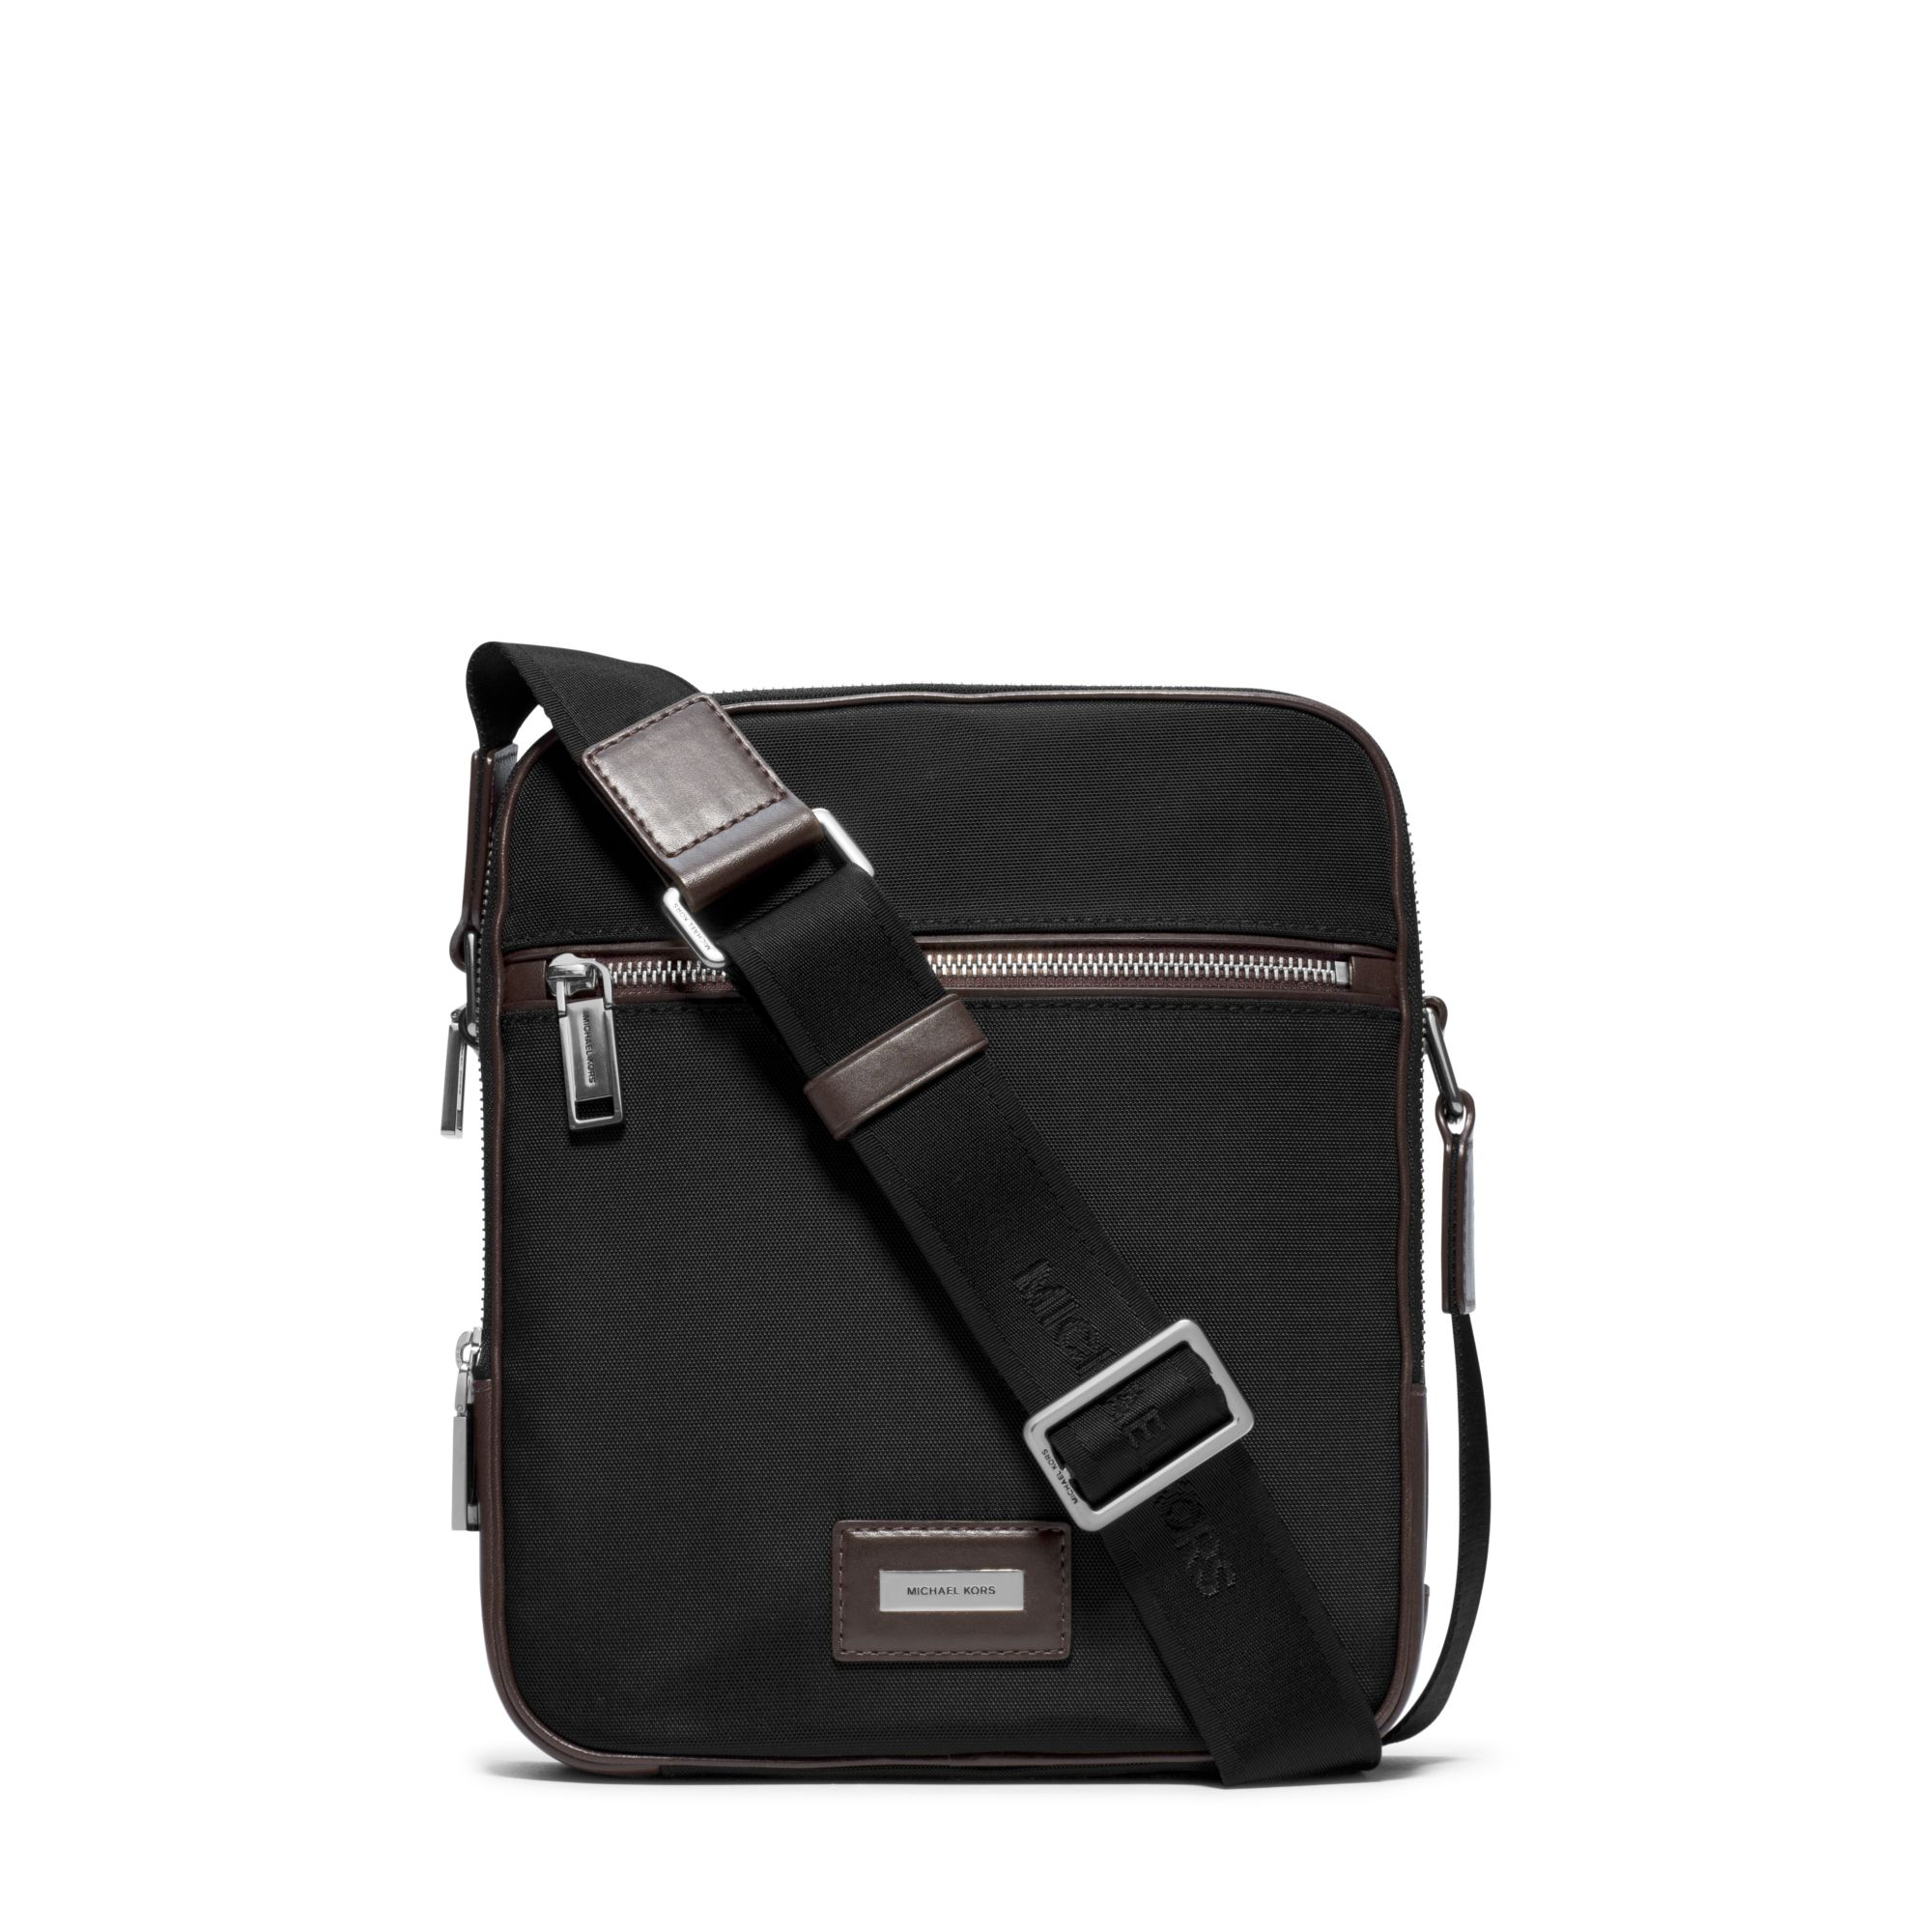 Lyst - Michael Kors Windsor Nylon Crossbody Bag in Black for Men